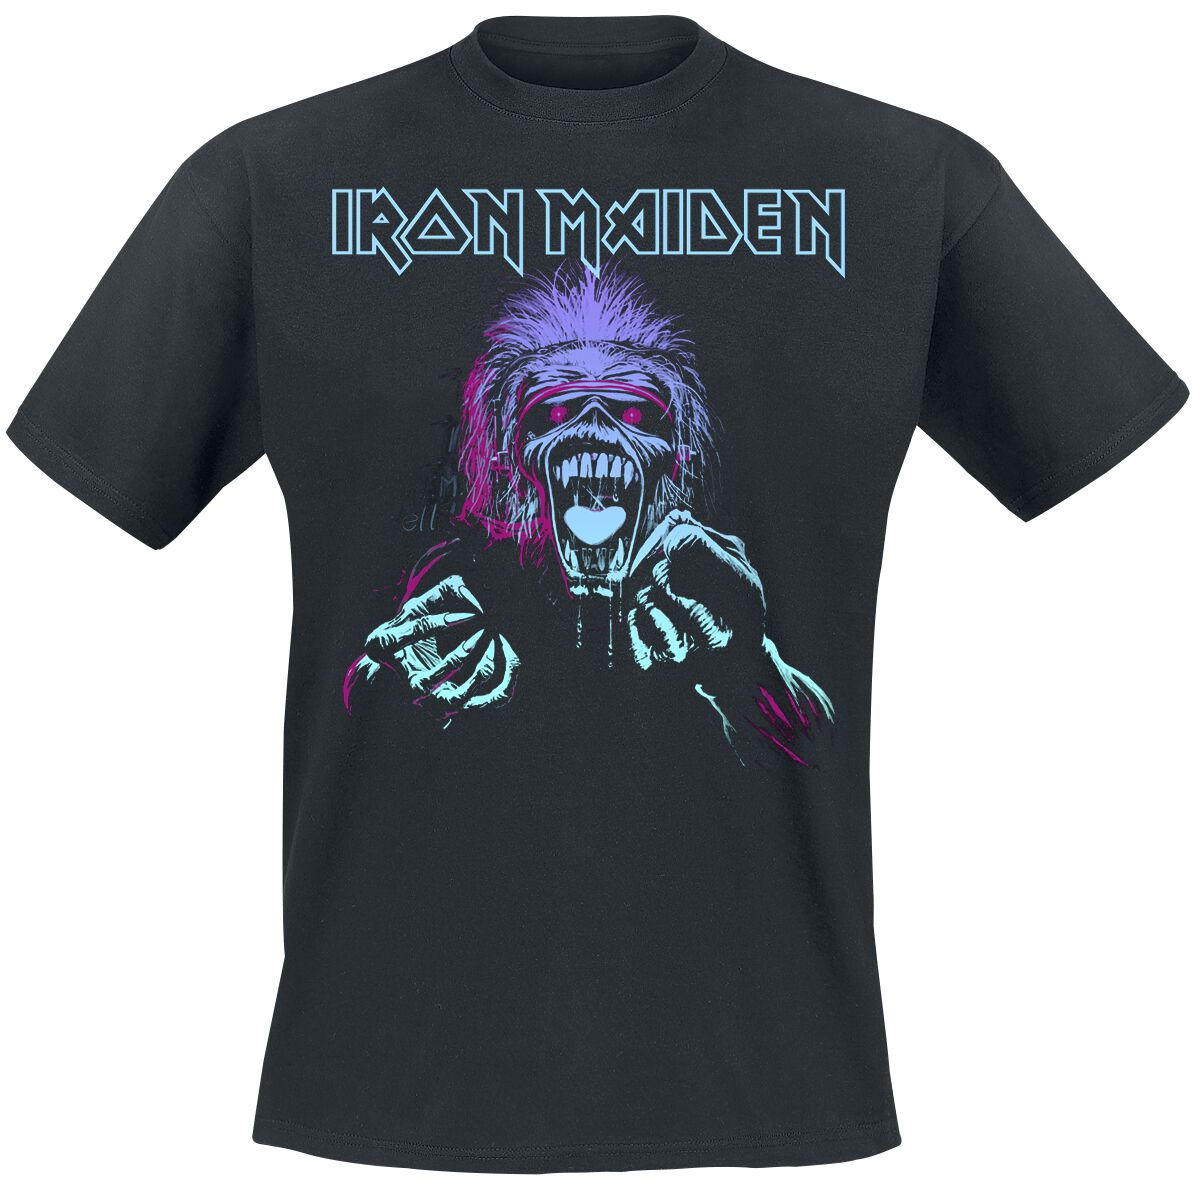 Iron Maiden T-Shirt - Pastel Eddie - S bis 4XL - für Männer - Größe S - schwarz  - Lizenziertes Merchandise!